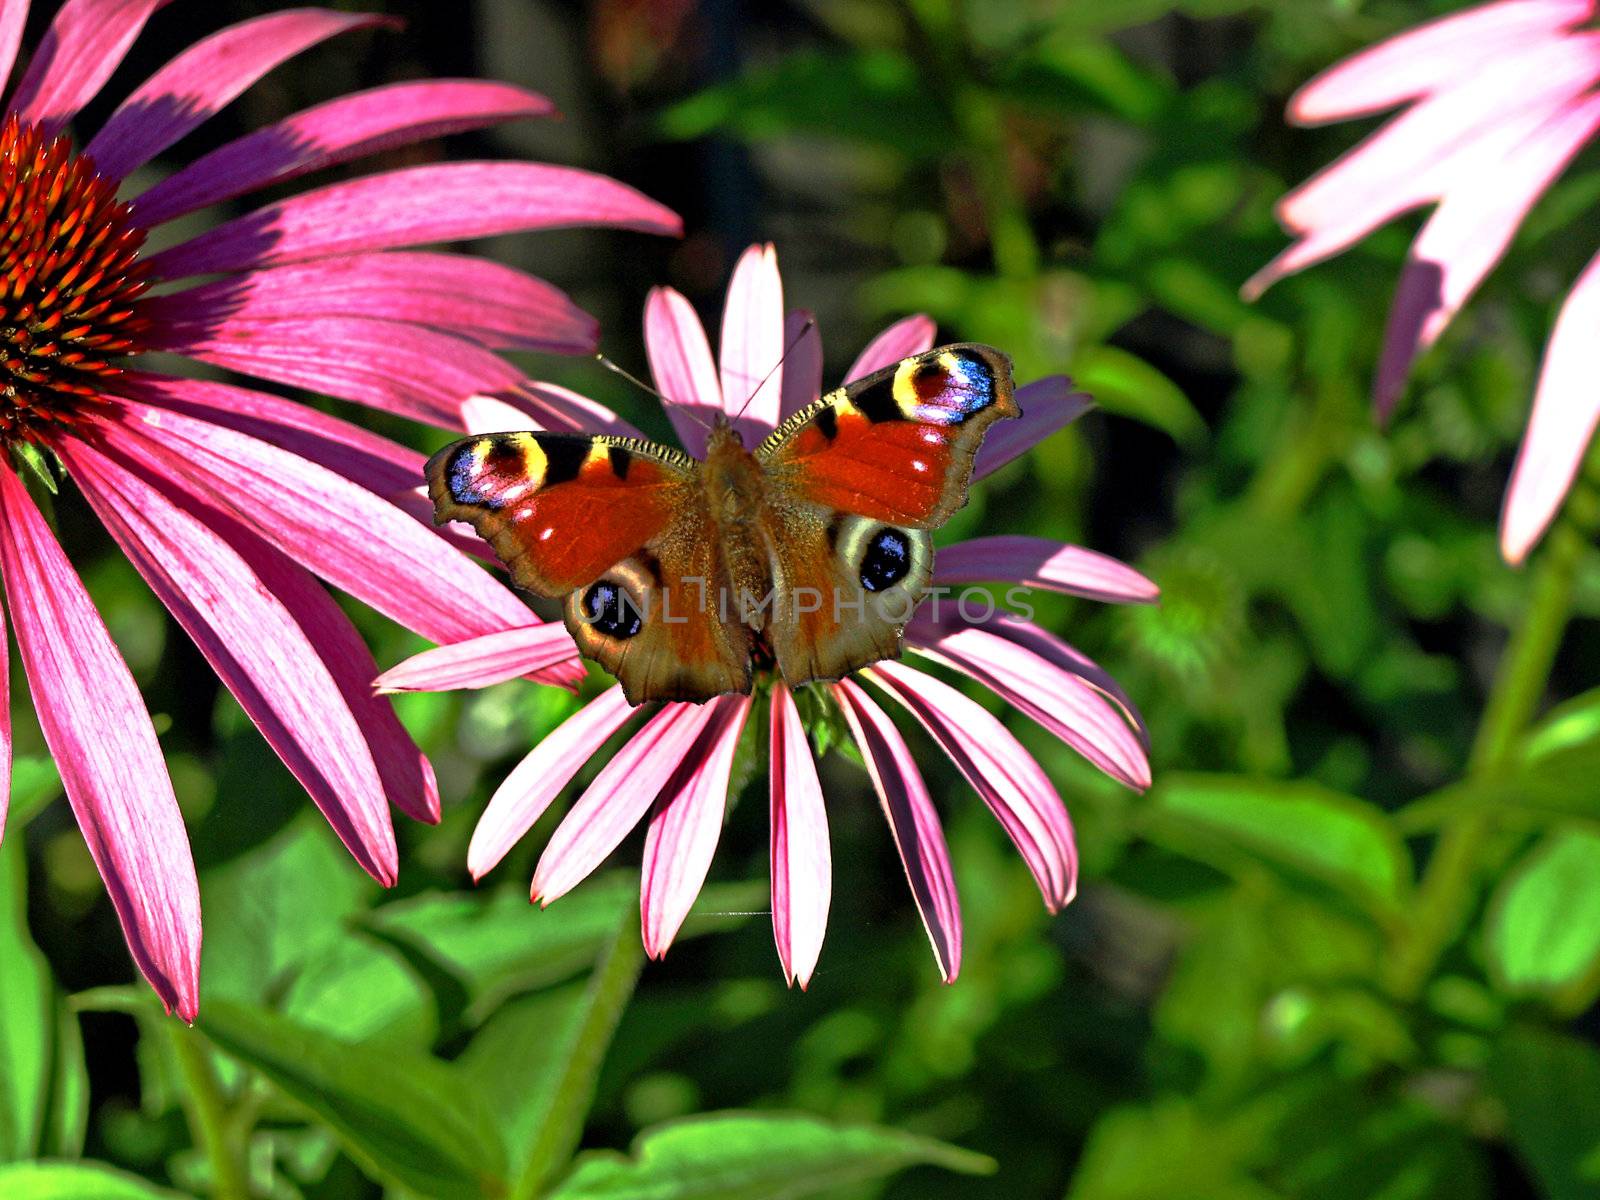 peacock butterfly by Jochen